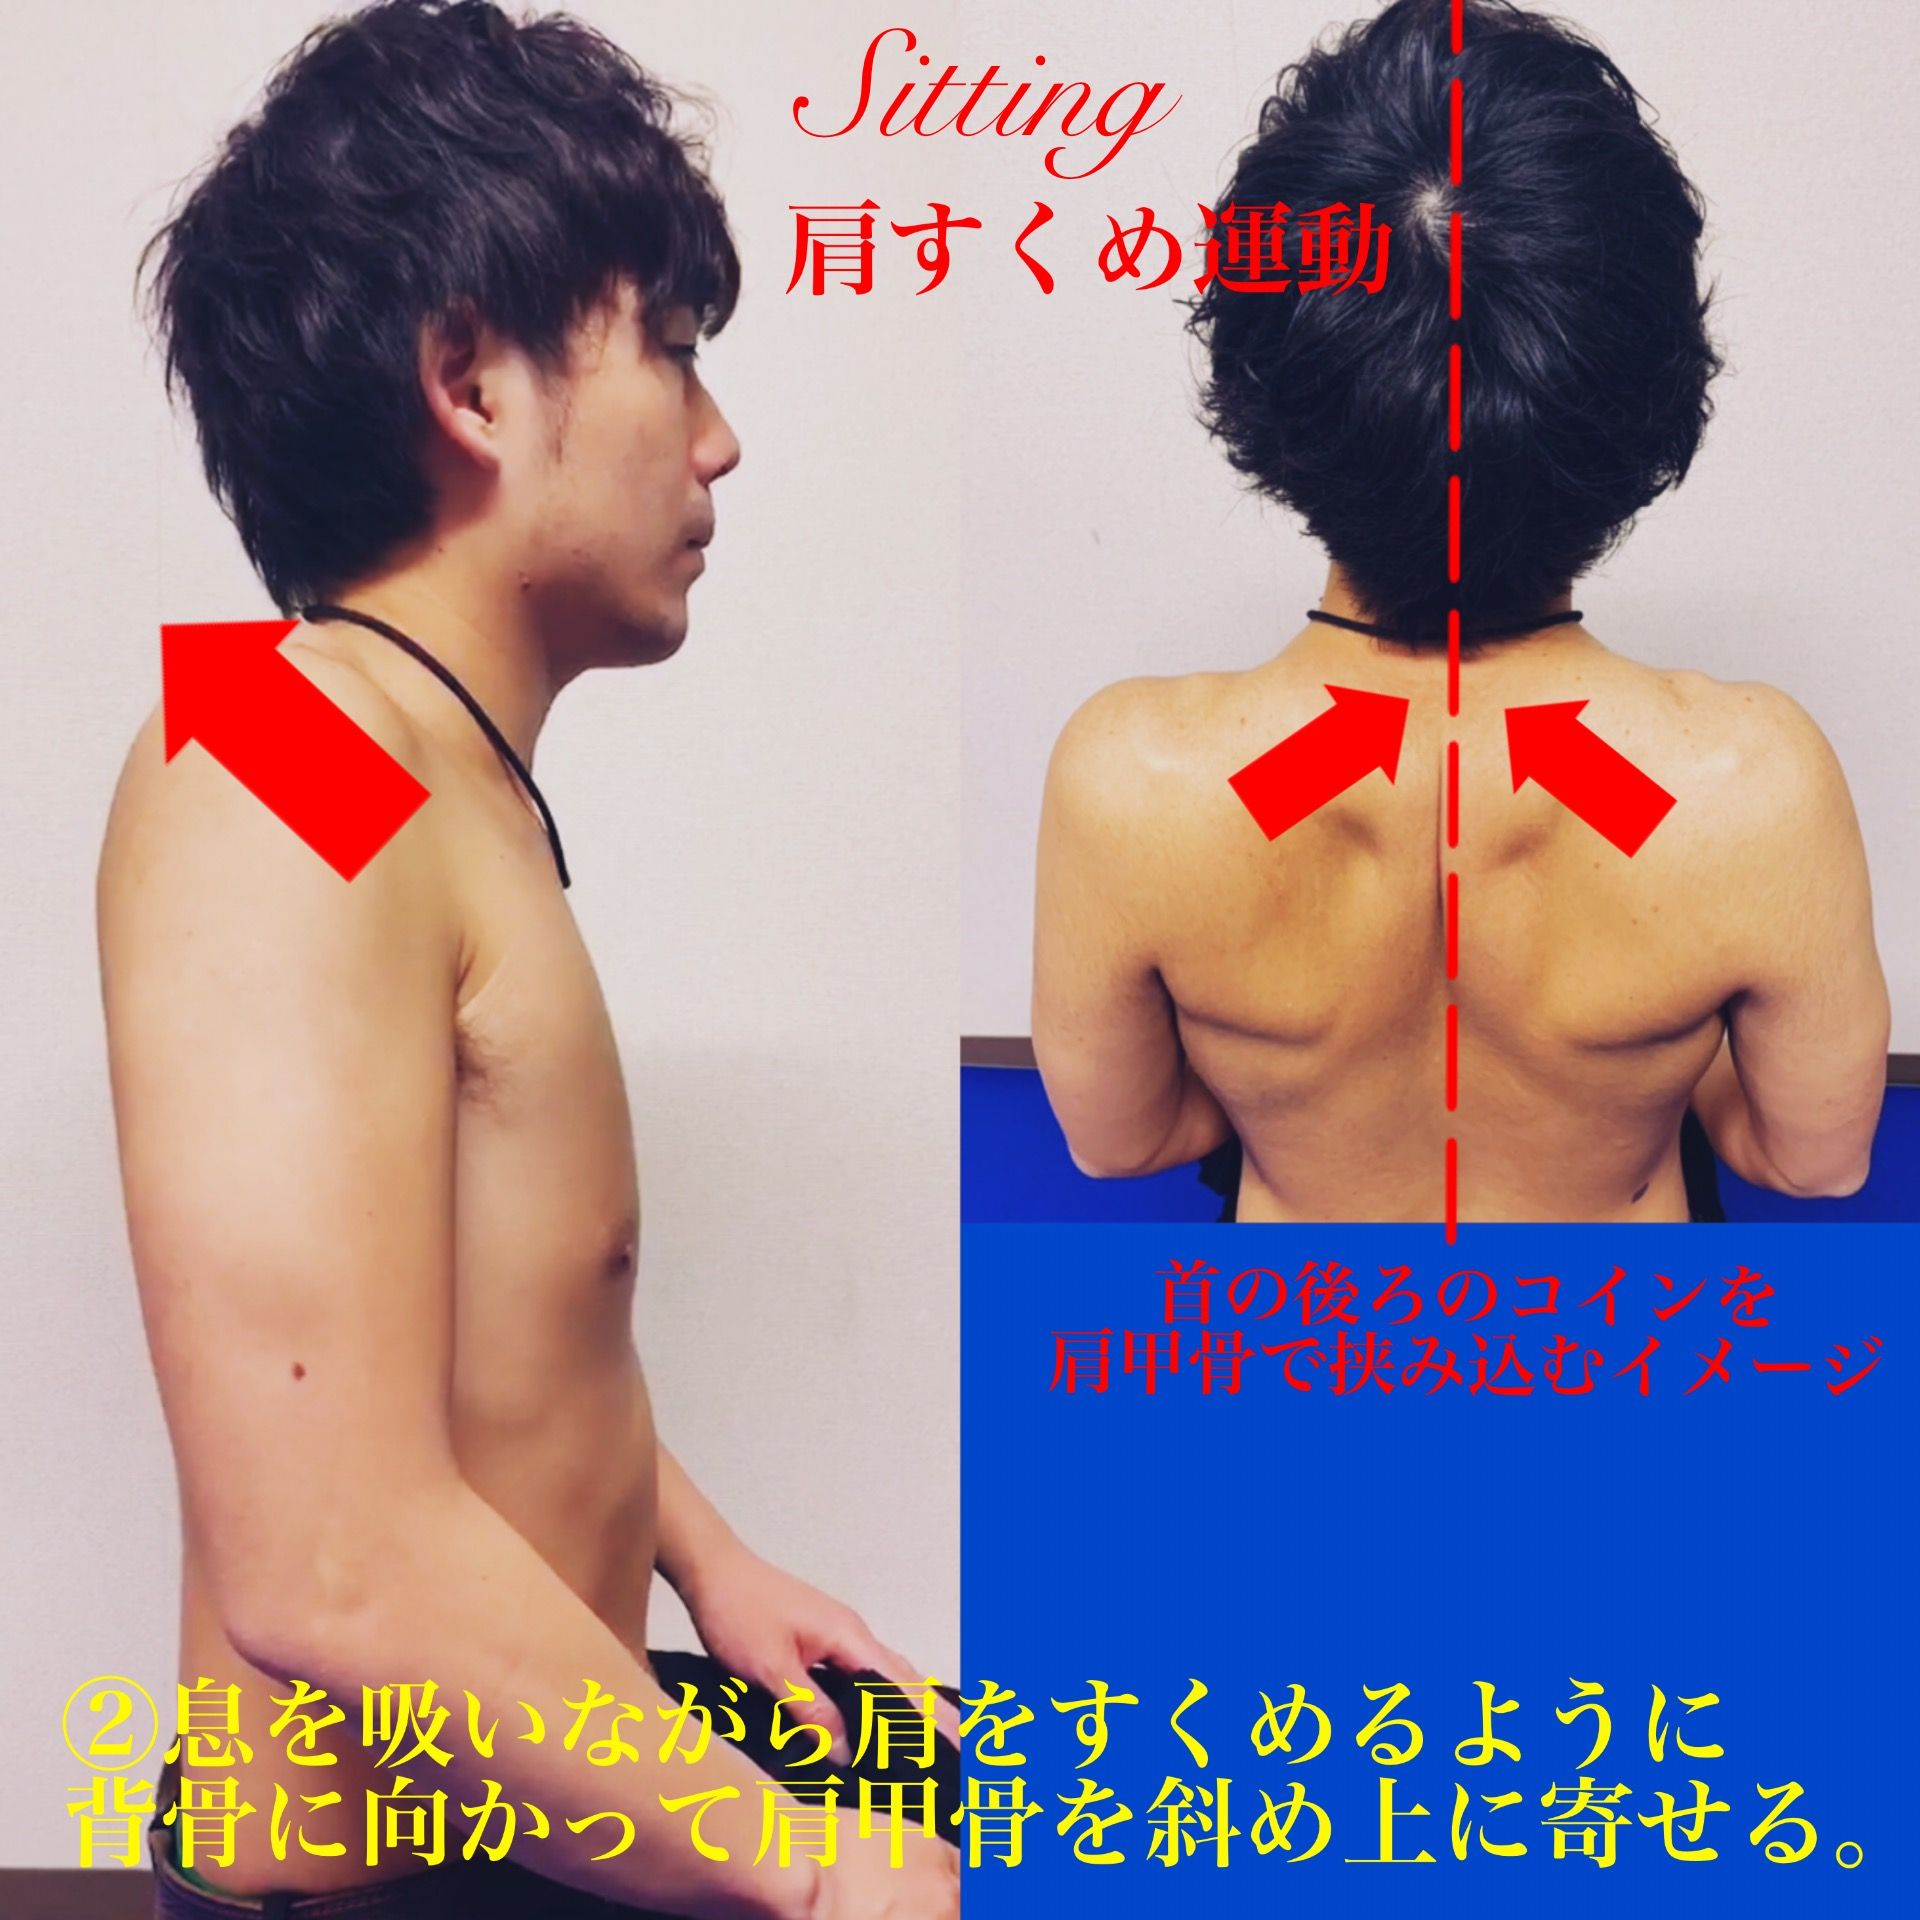 肩こり解消に 胸張り 肩すくめの運動 理学療法士maechanのコンディショニングブログ 楽天ブログ